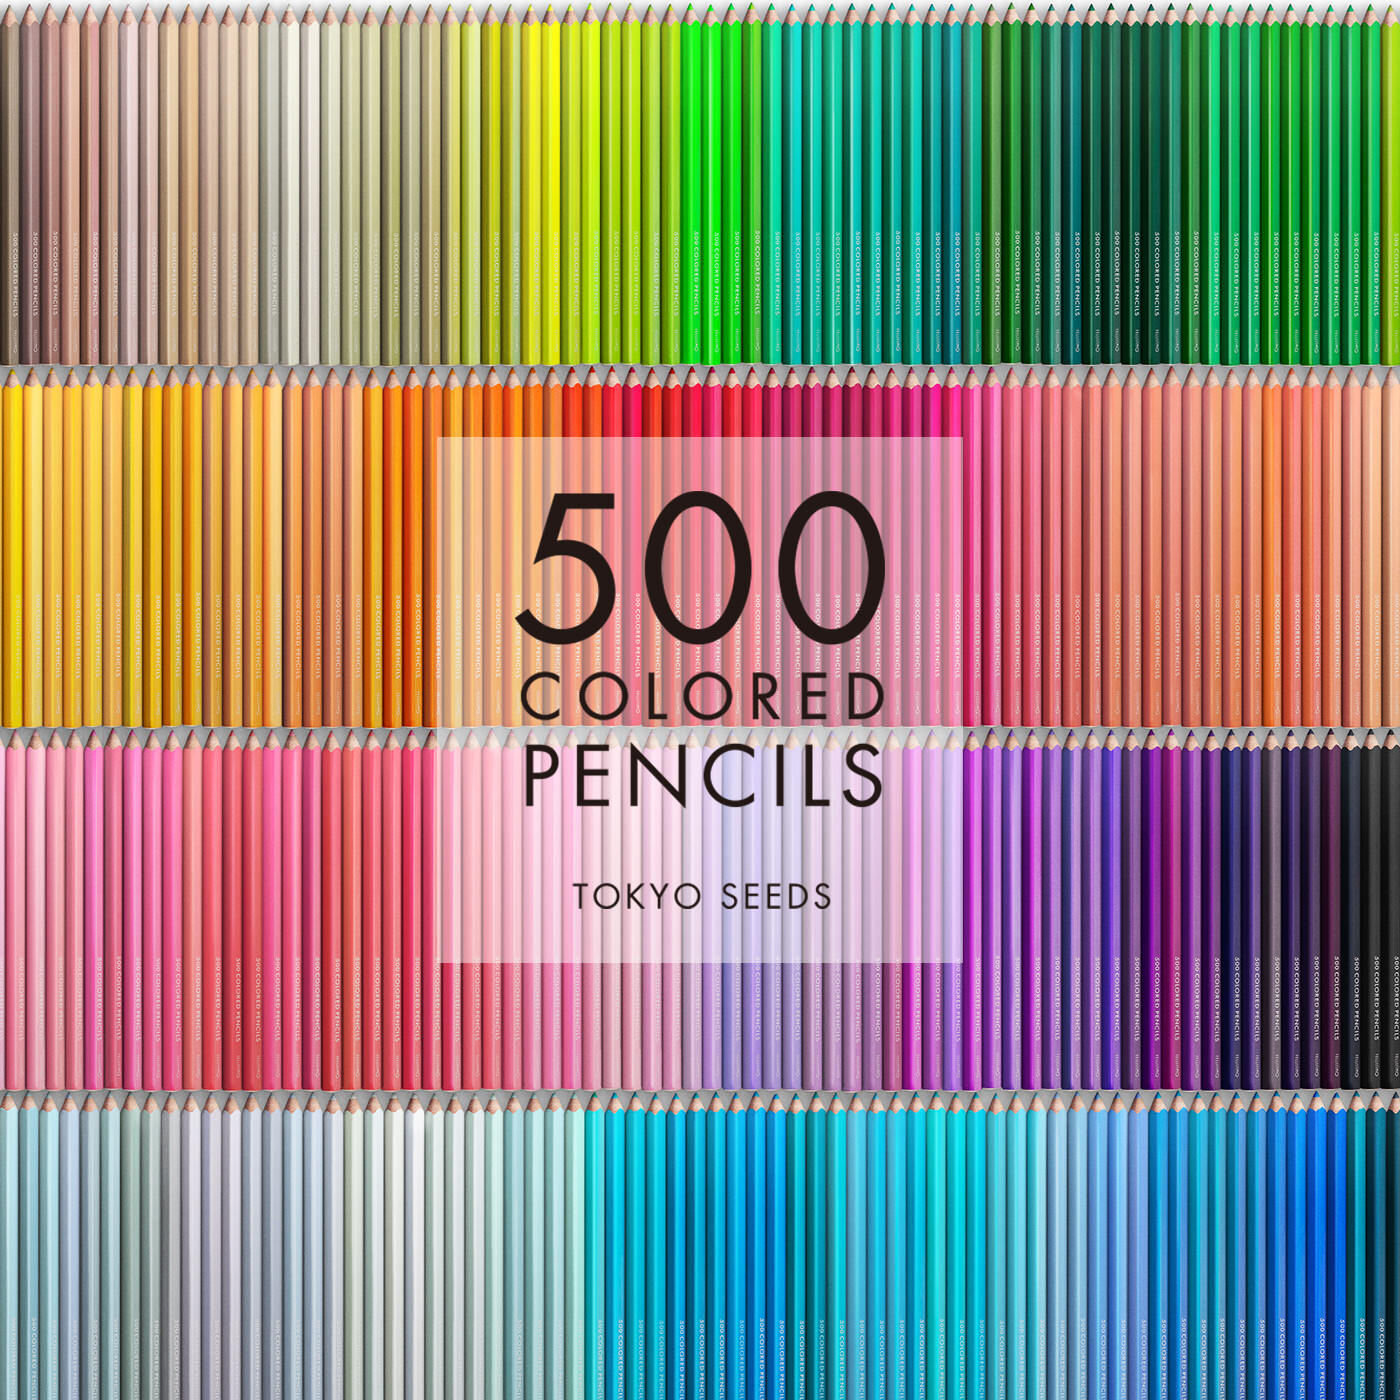 Real Stock|【436/500 SKY STILL】500色の色えんぴつ TOKYO SEEDS|1992年、世界初の「500色」という膨大な色数の色えんぴつが誕生して以来、その販売数は発売当初から合わせると、世界55ヵ国10万セット以上。今回、メイド・イン・ジャパンにこだわり、すべてが新しく生まれ変わって登場しました。